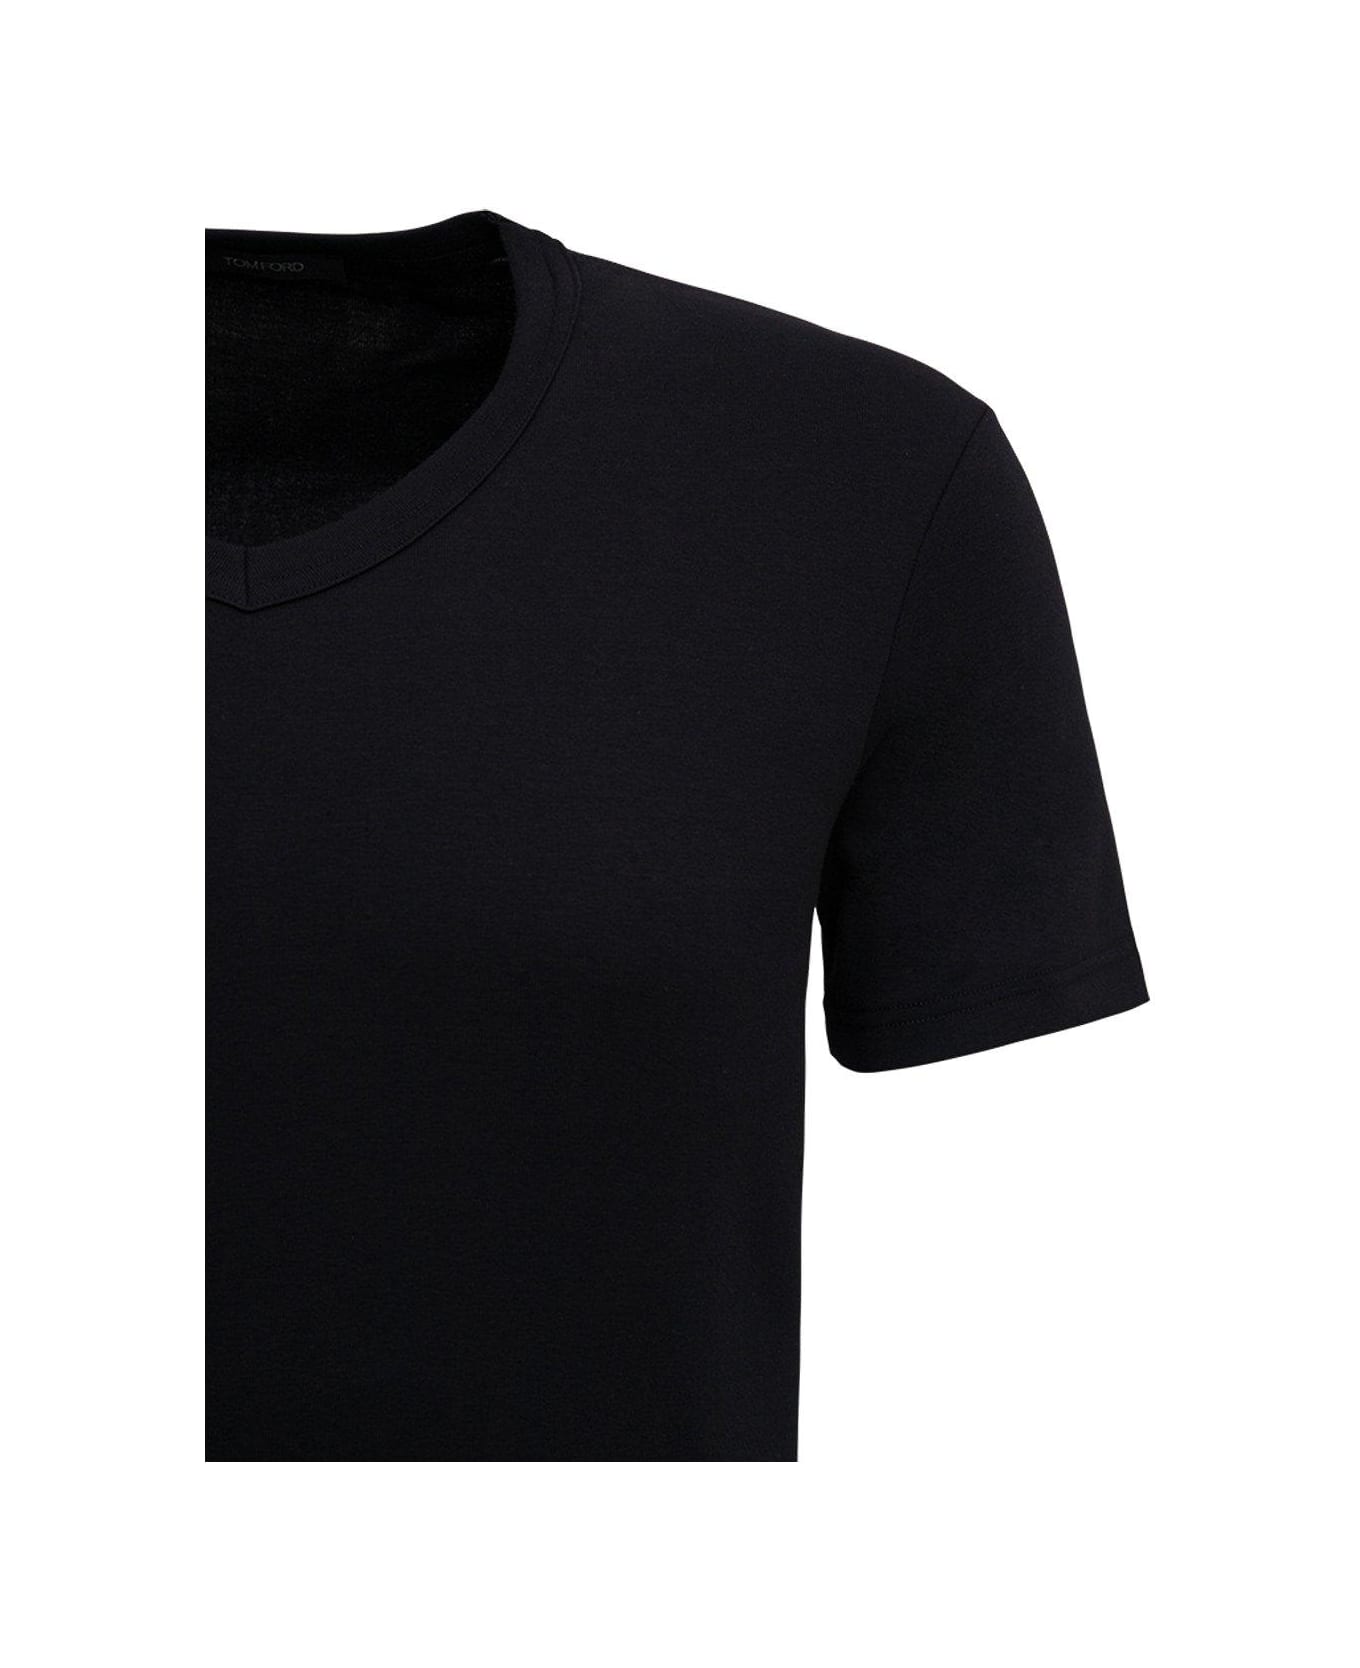 Tom Ford Slim Fit T-shirt - BLACK